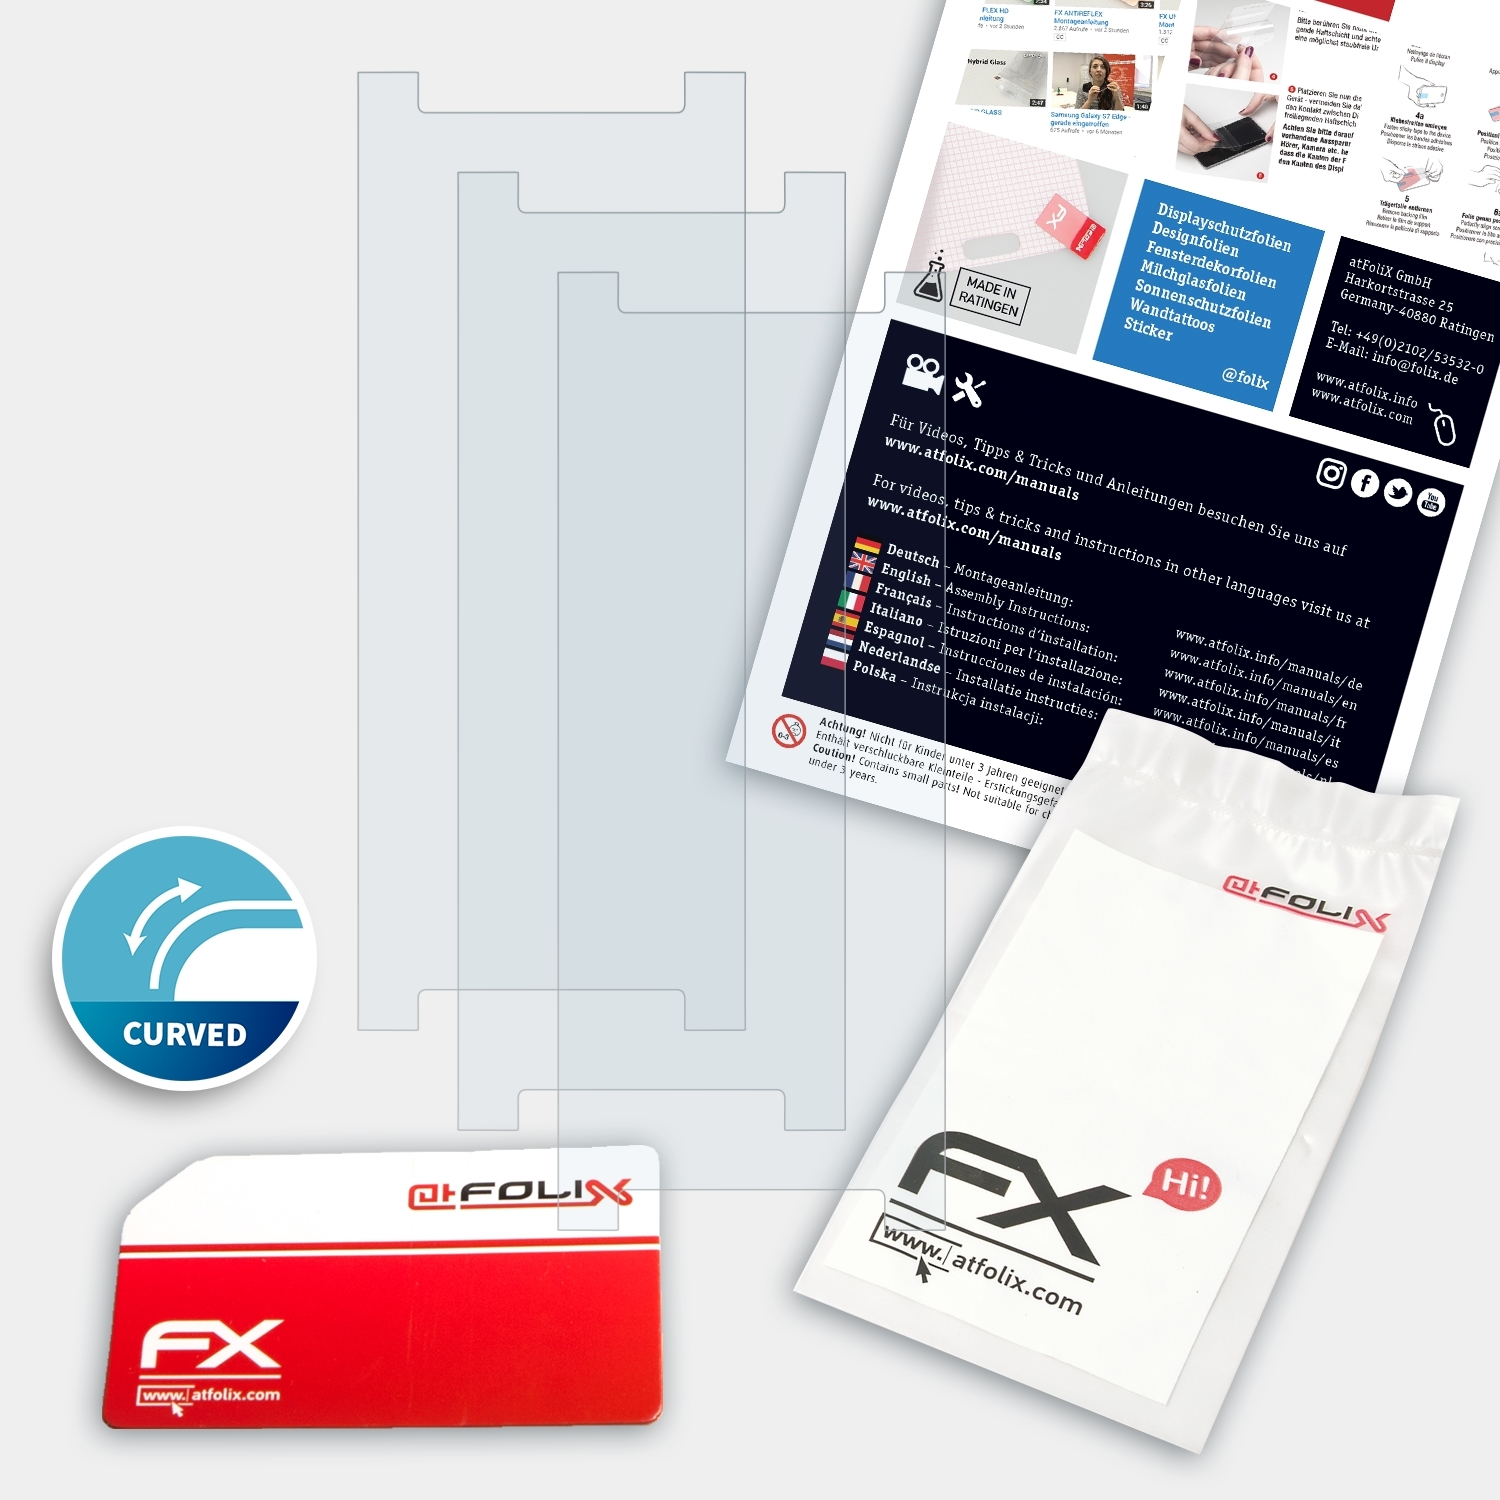 Withings ATFOLIX 3x FX-ActiFleX Pulse HR) Displayschutz(für